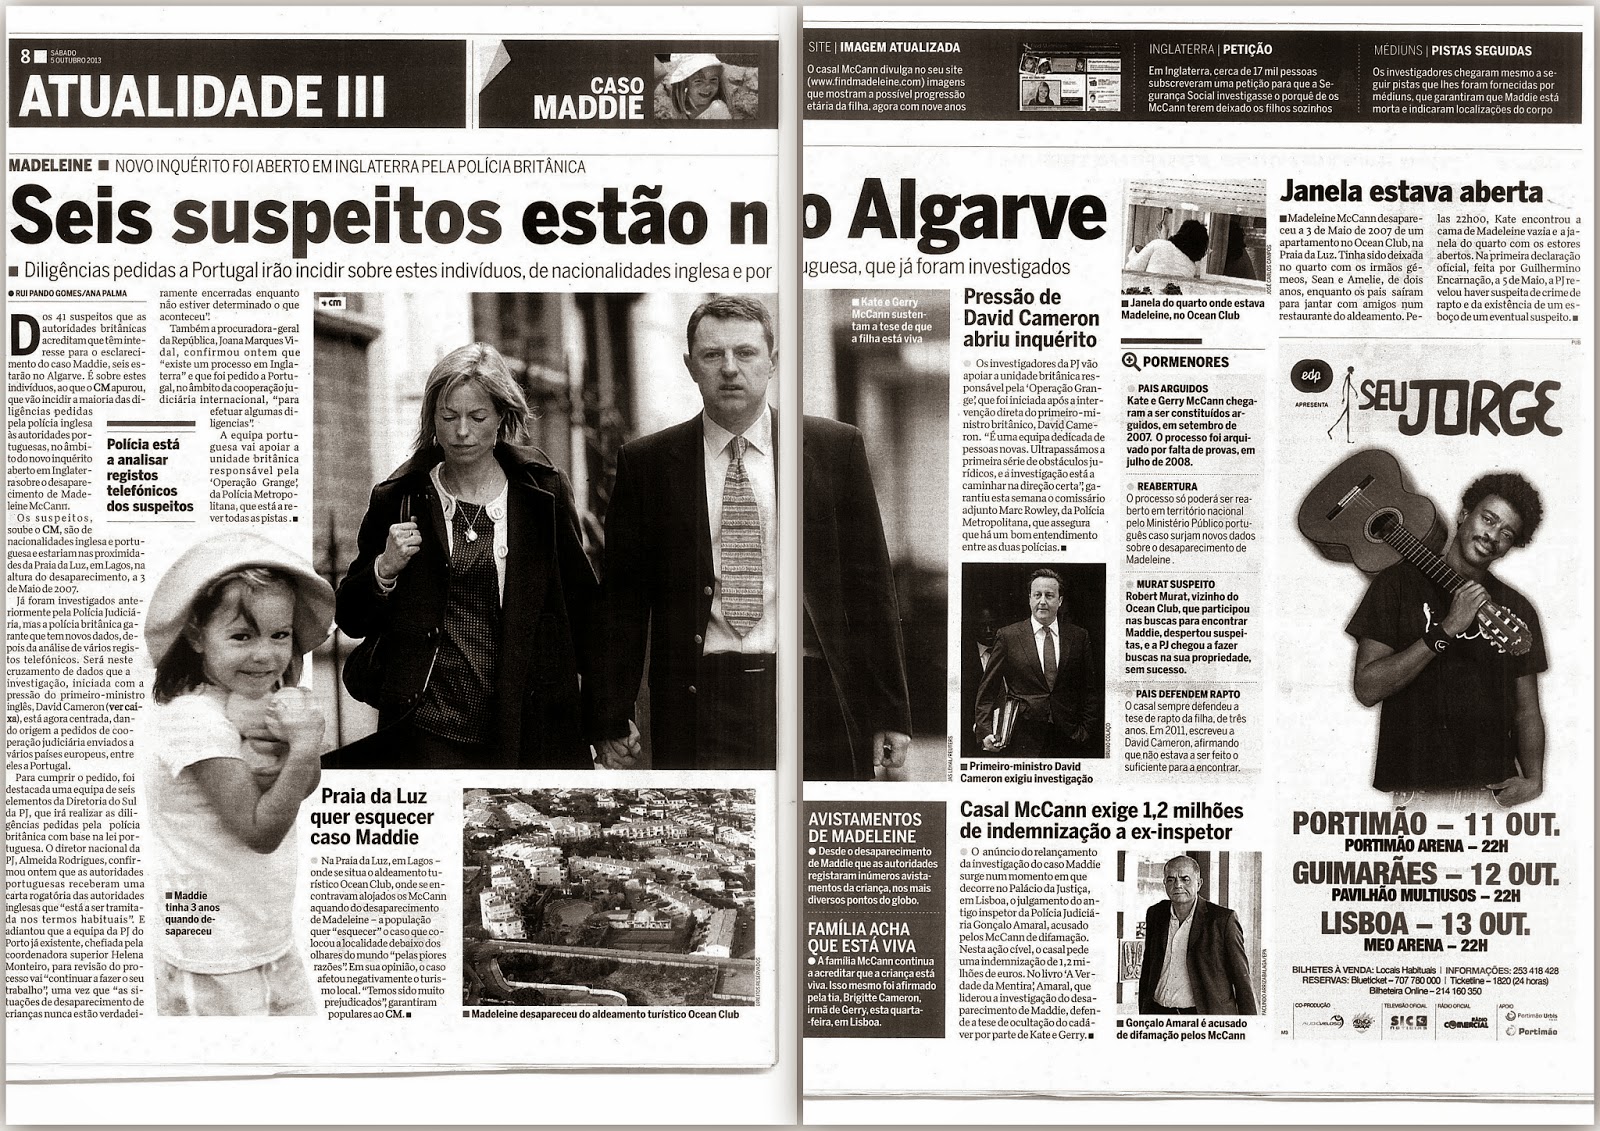 Correio da Manhã, paper edition, 05 October 2013